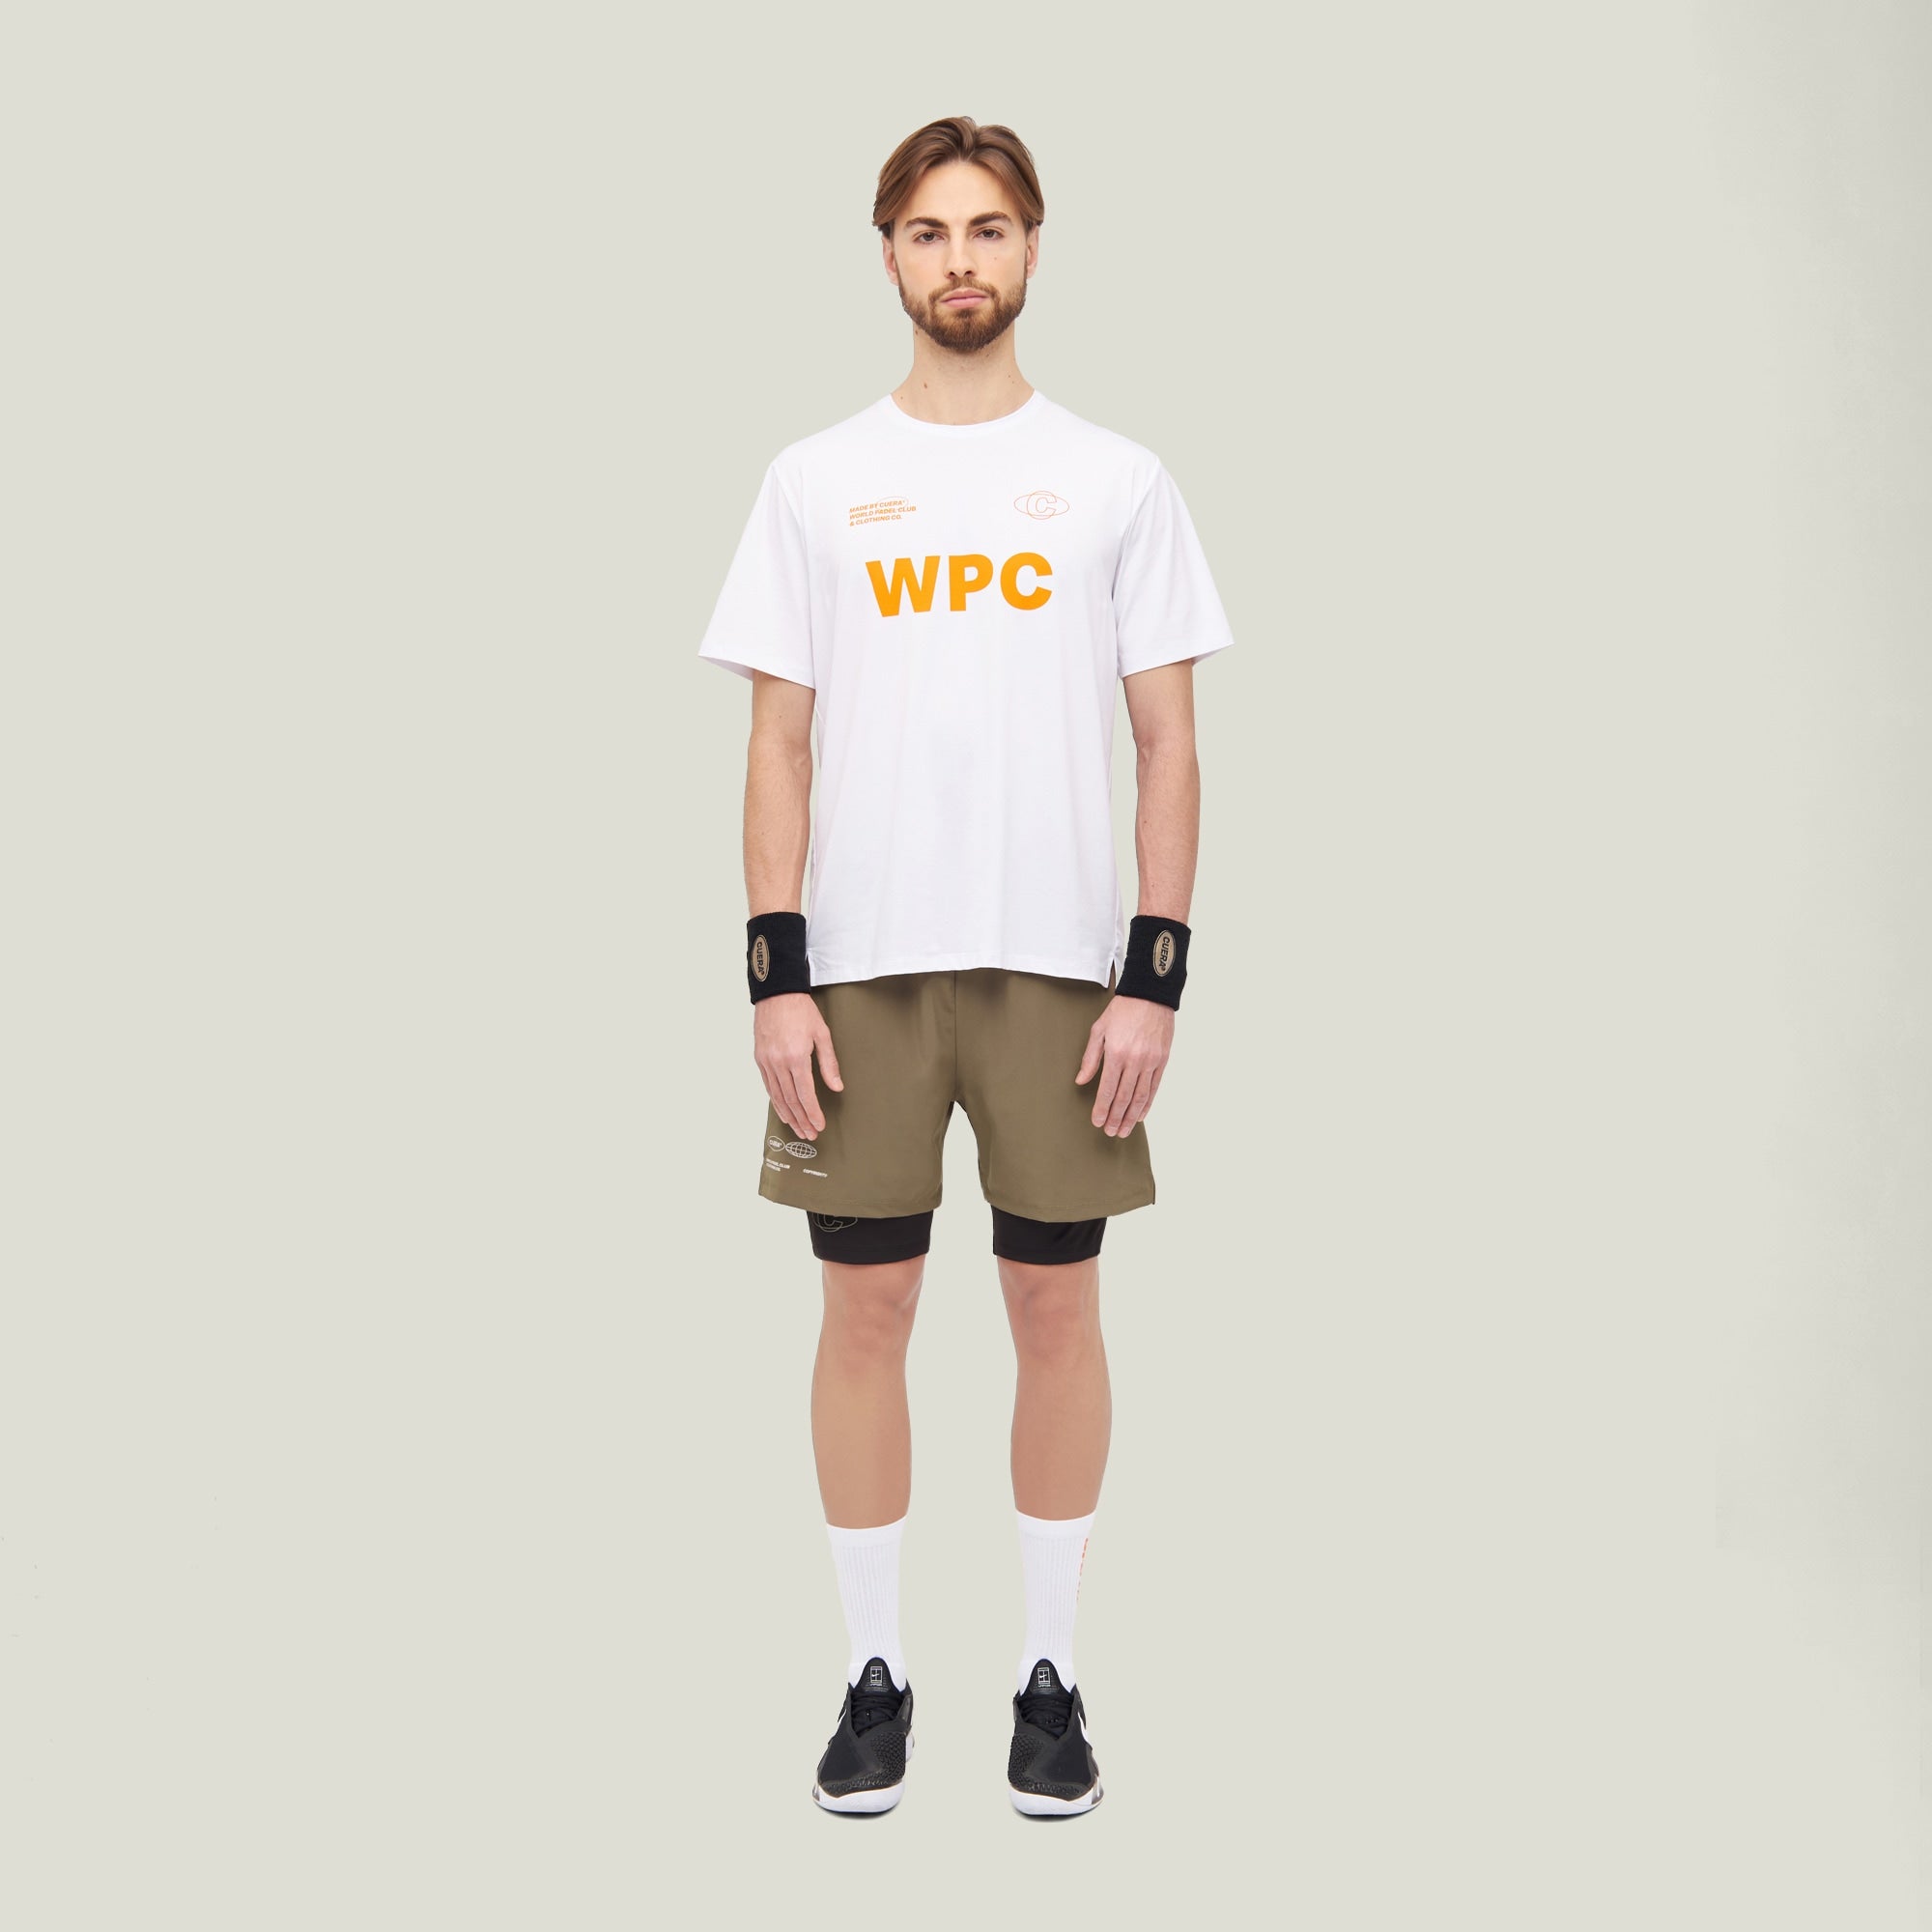 Mens Active Globe Shorts - Walnut